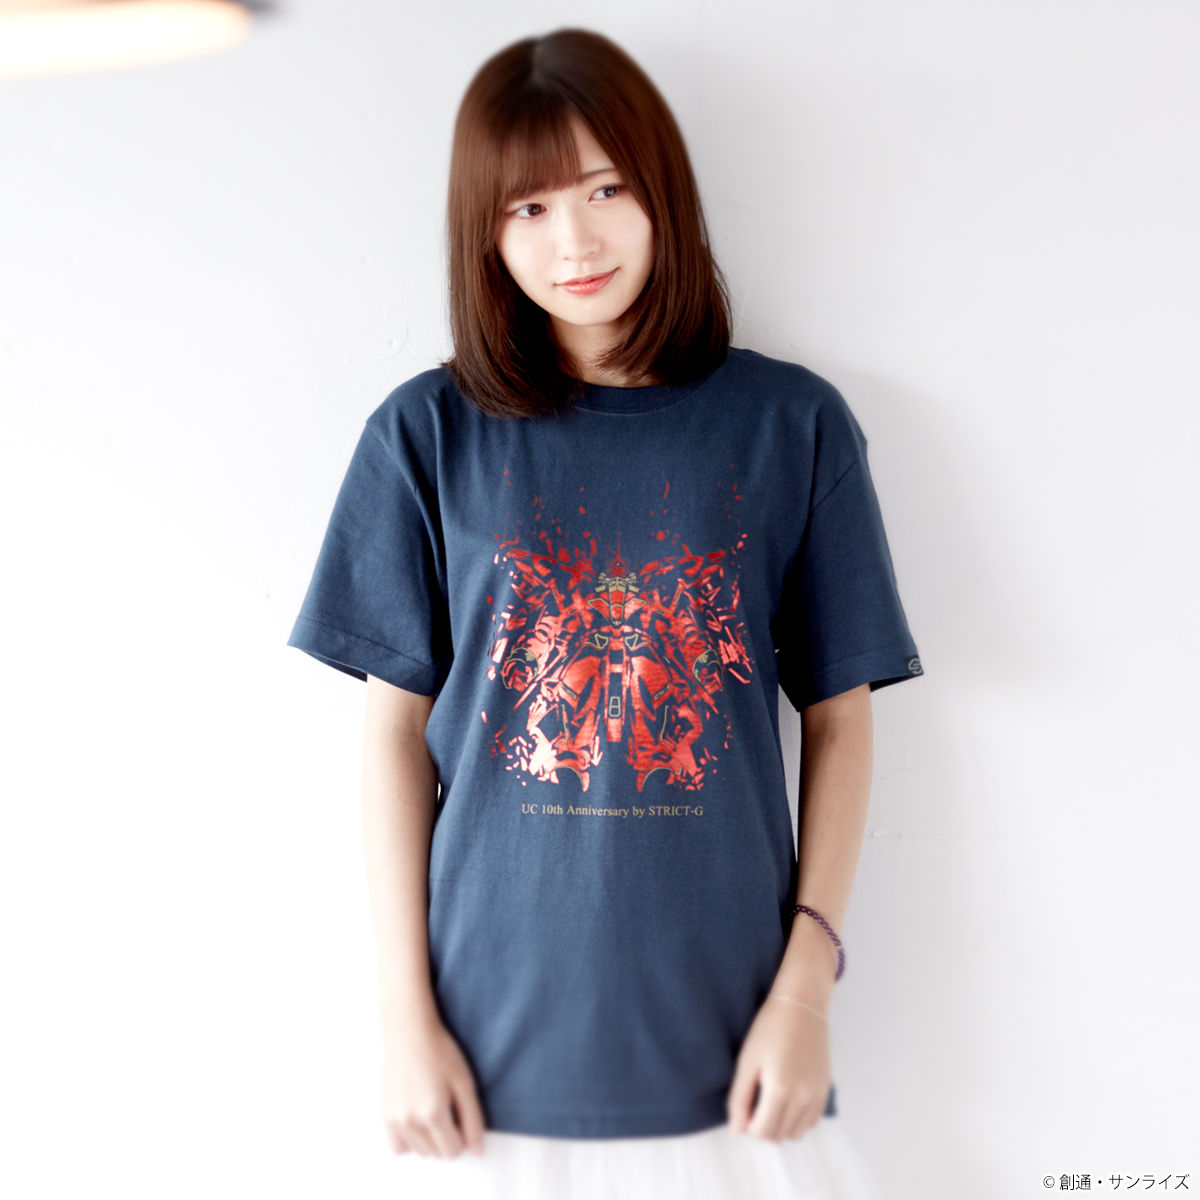 14,700円ユニコーンガンダム 10周年 アニバーサリー Tシャツ　STRICT-G